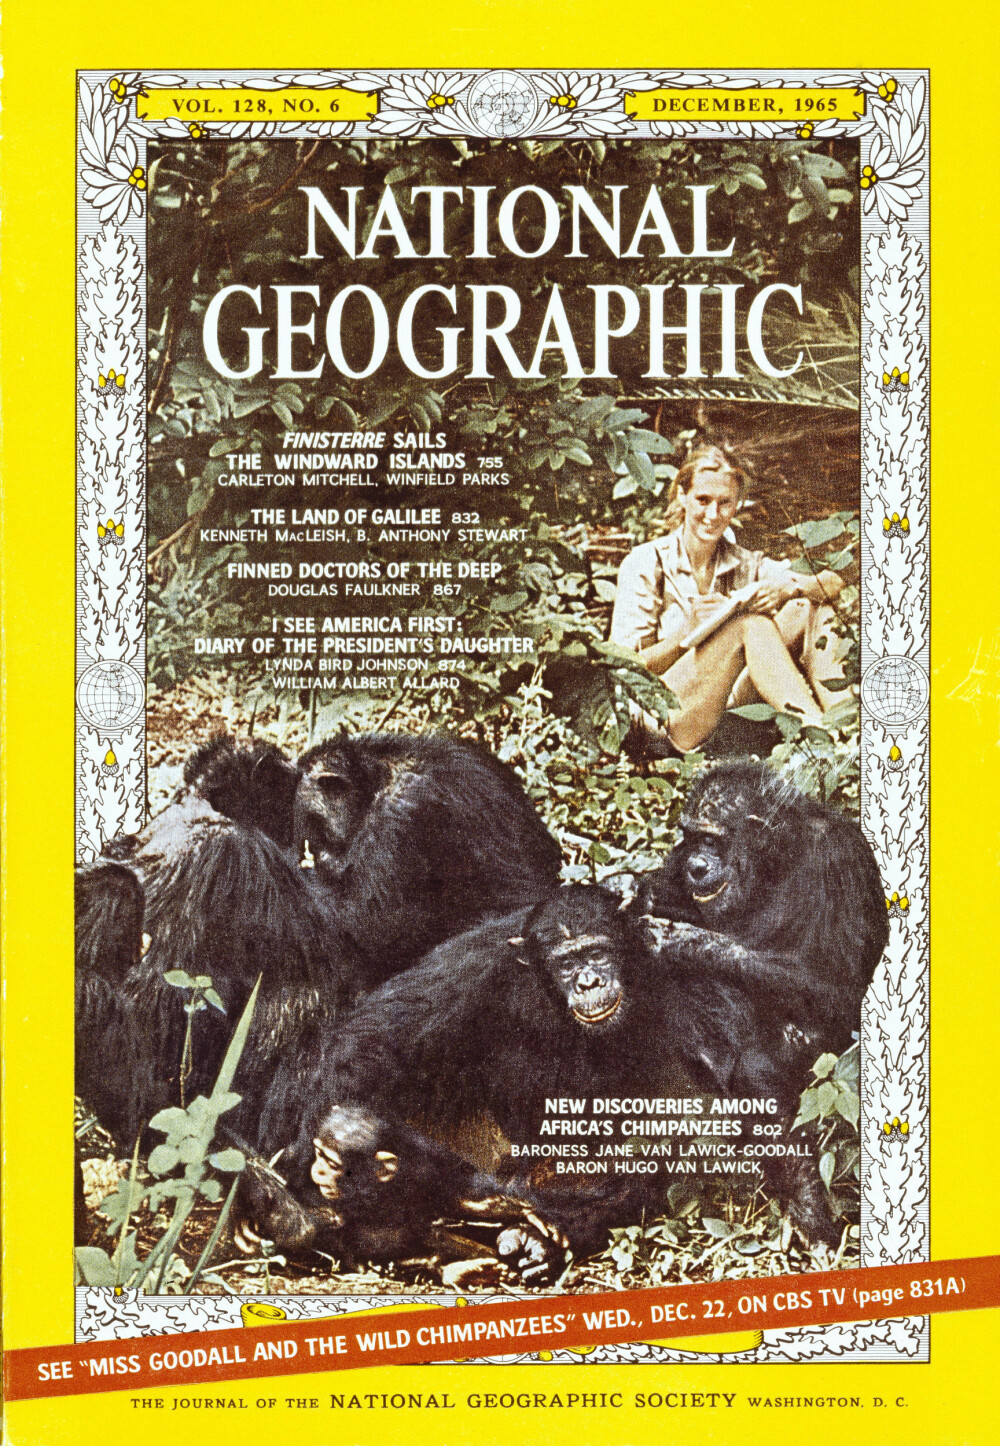 GODT BRUKT: Goodall og hennes arbeid har blitt flittig brukt og fortalt av National Geographic opp gjennom årene. Her fra en forside av magasinet i 1965.